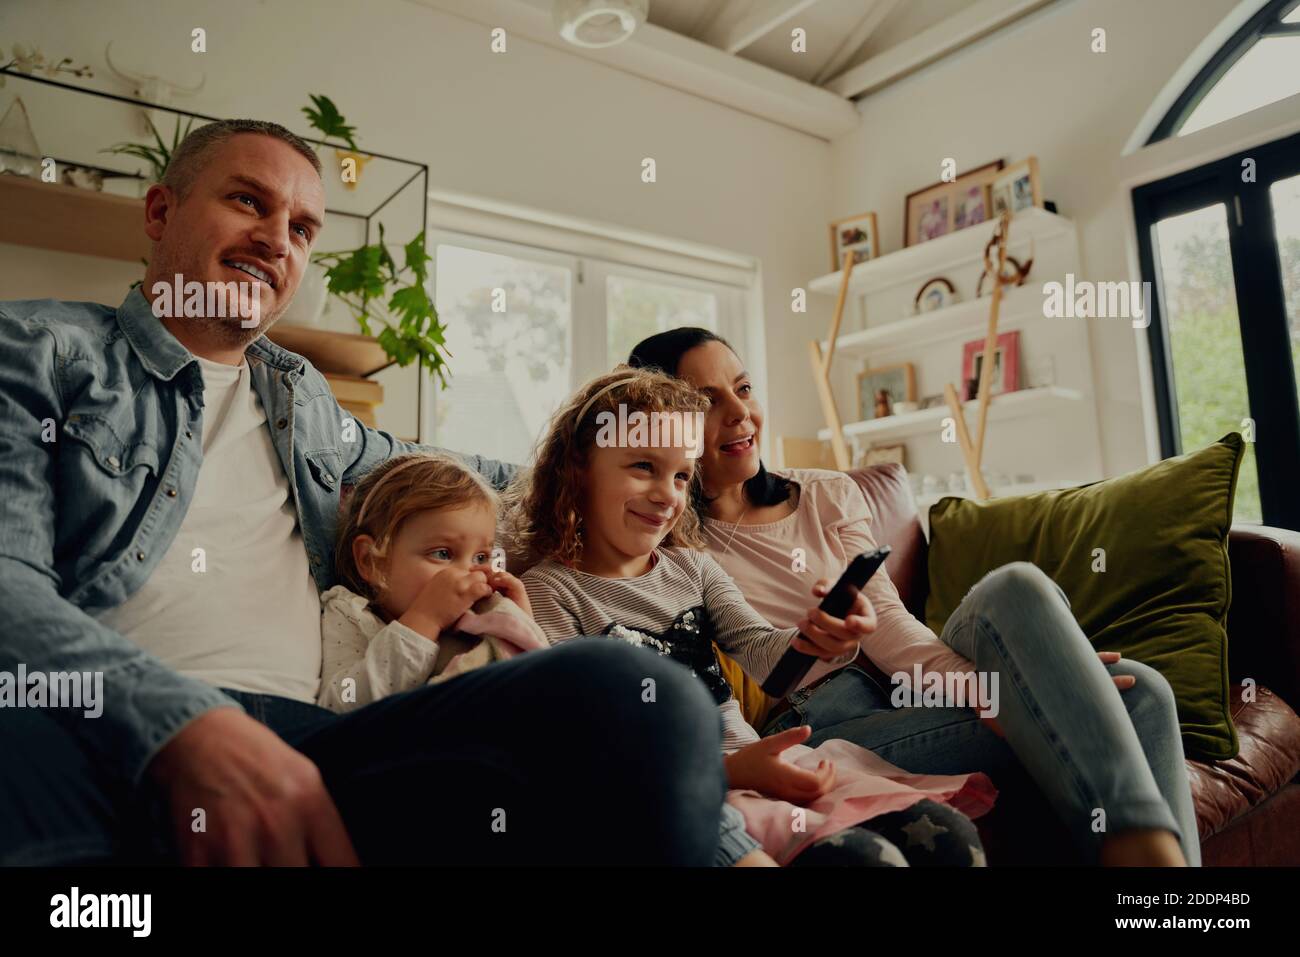 Padres jóvenes sonriendo sentados junto con una hija que controla el mando a distancia en casa Foto de stock